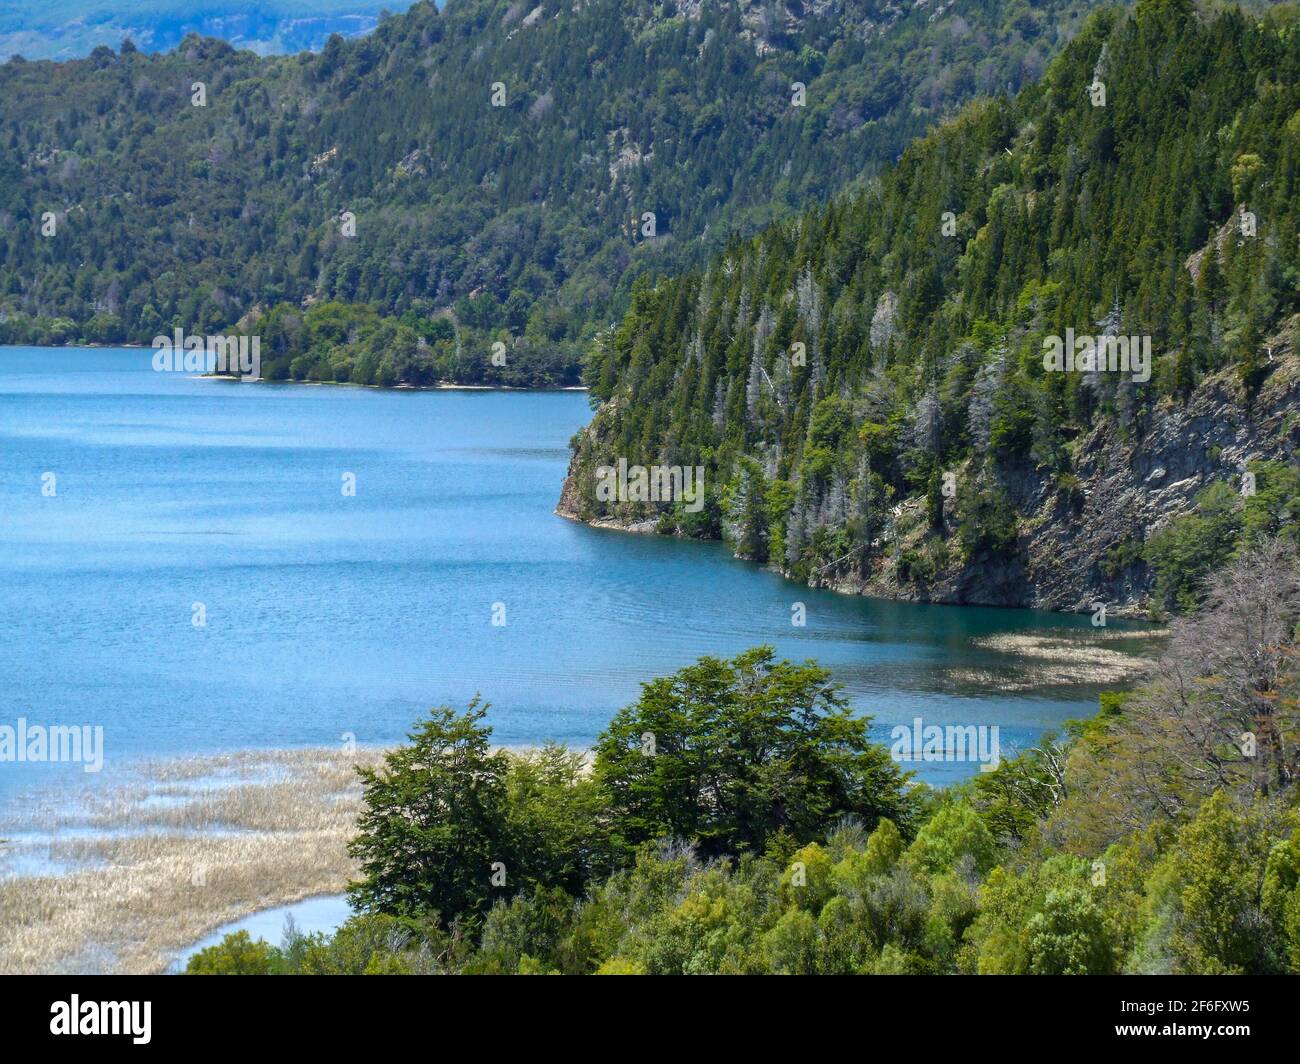 Hermosa vista al Lago verde en el Parque Nacional los Alerces de la patagonia, Argentina Foto de stock